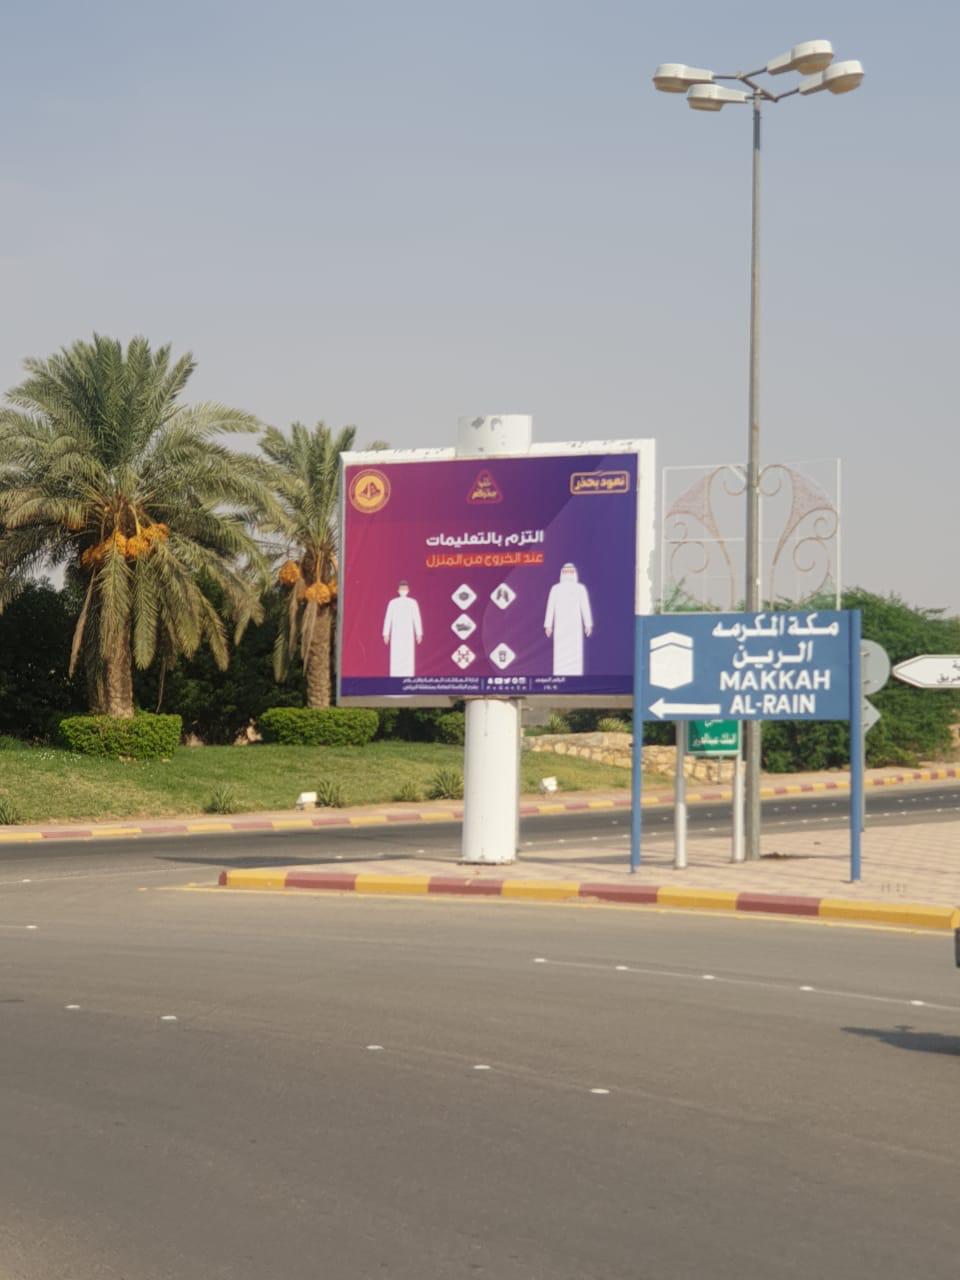 هيئة الأمر بالمعروف بمحافظة الحريق بمنطقة الرياض تفعل حملة «خذوا حذركم»